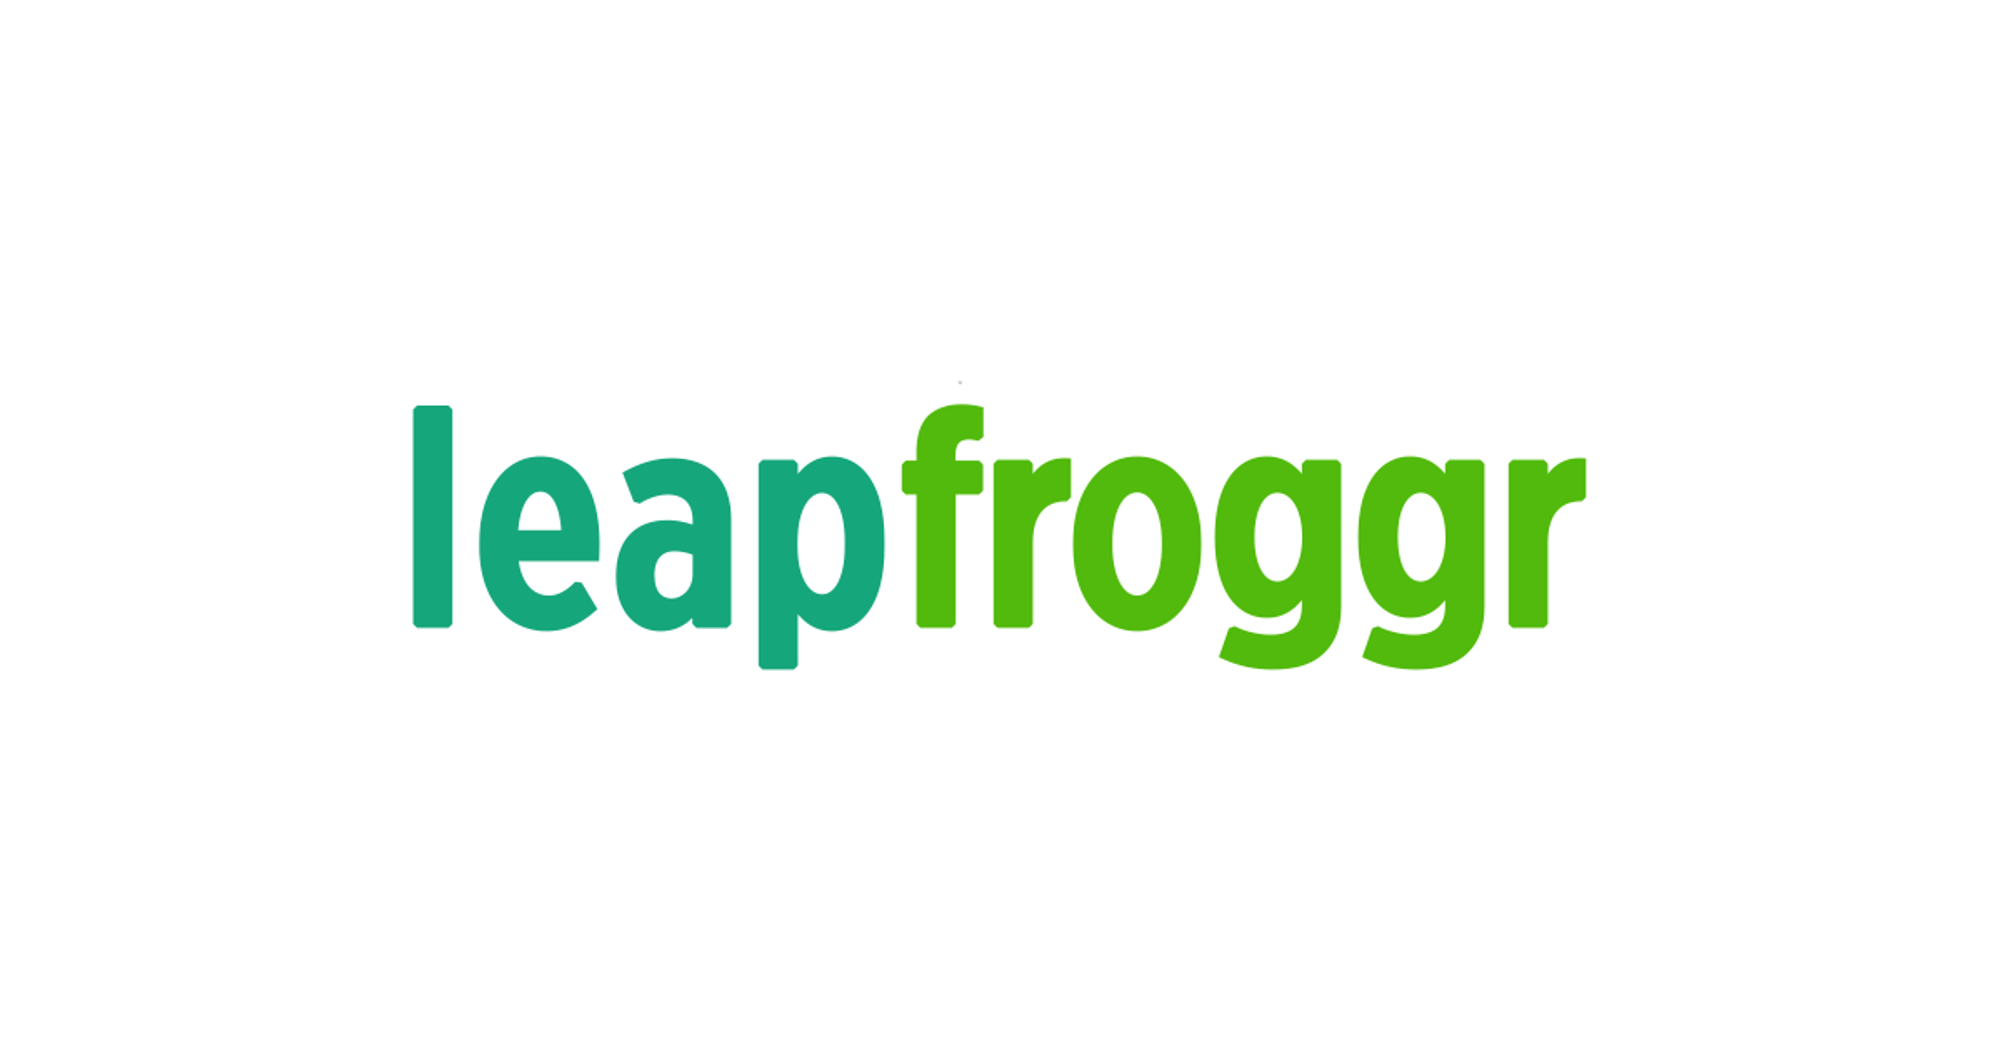 Registered Medical Technologist at LeapFroggr Inc.